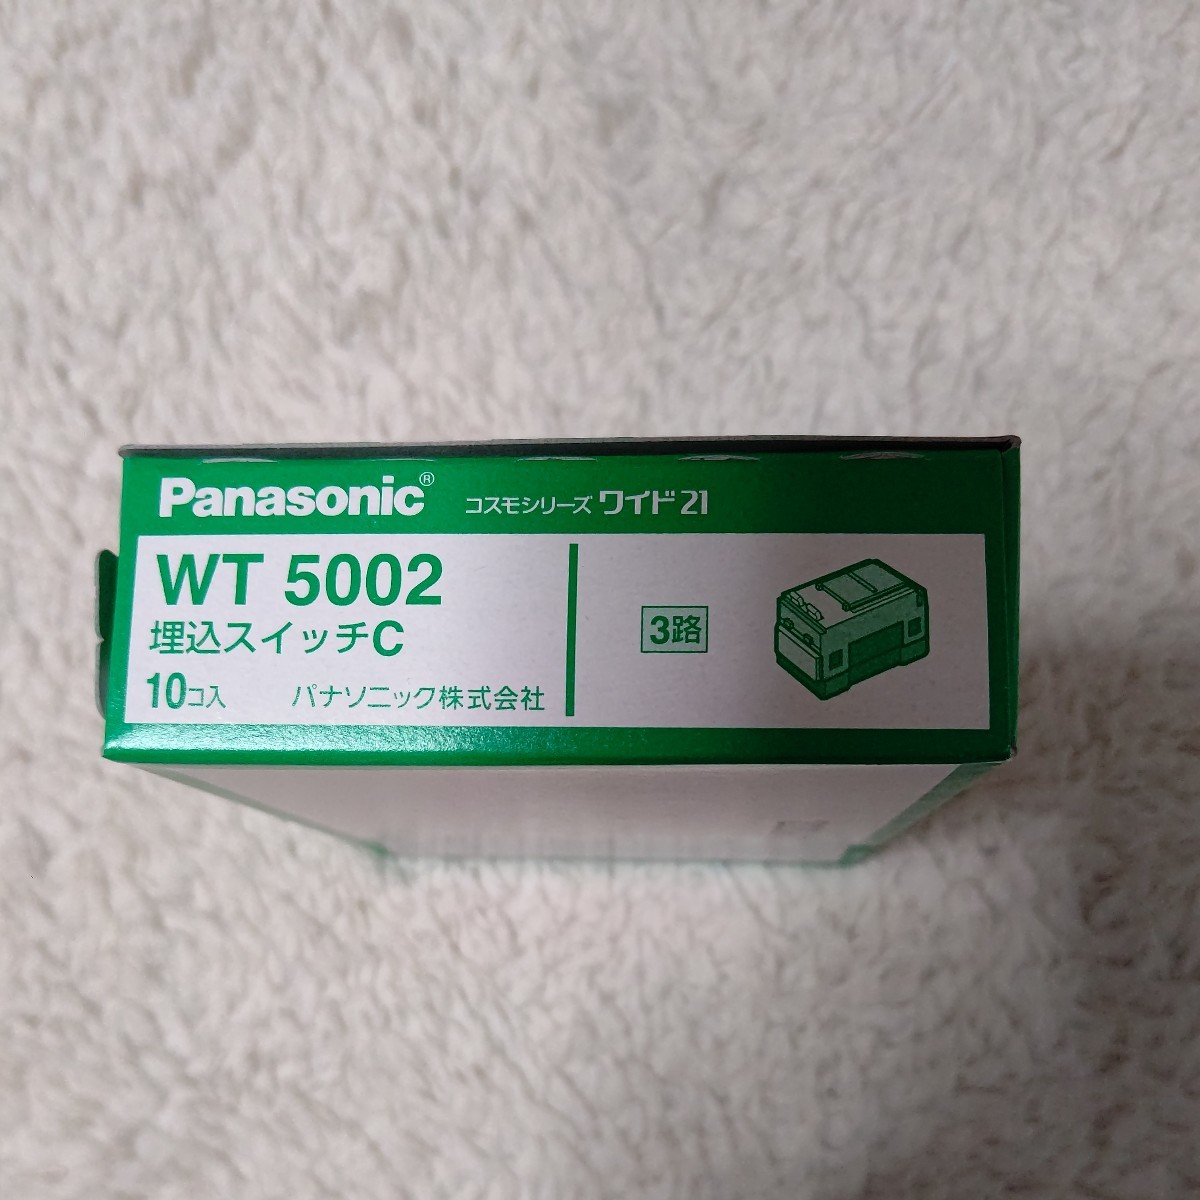 Panasonic パナソニック WT5002 10個 コスモシリーズワイド21 埋込スイッチC 15A 3路_画像2